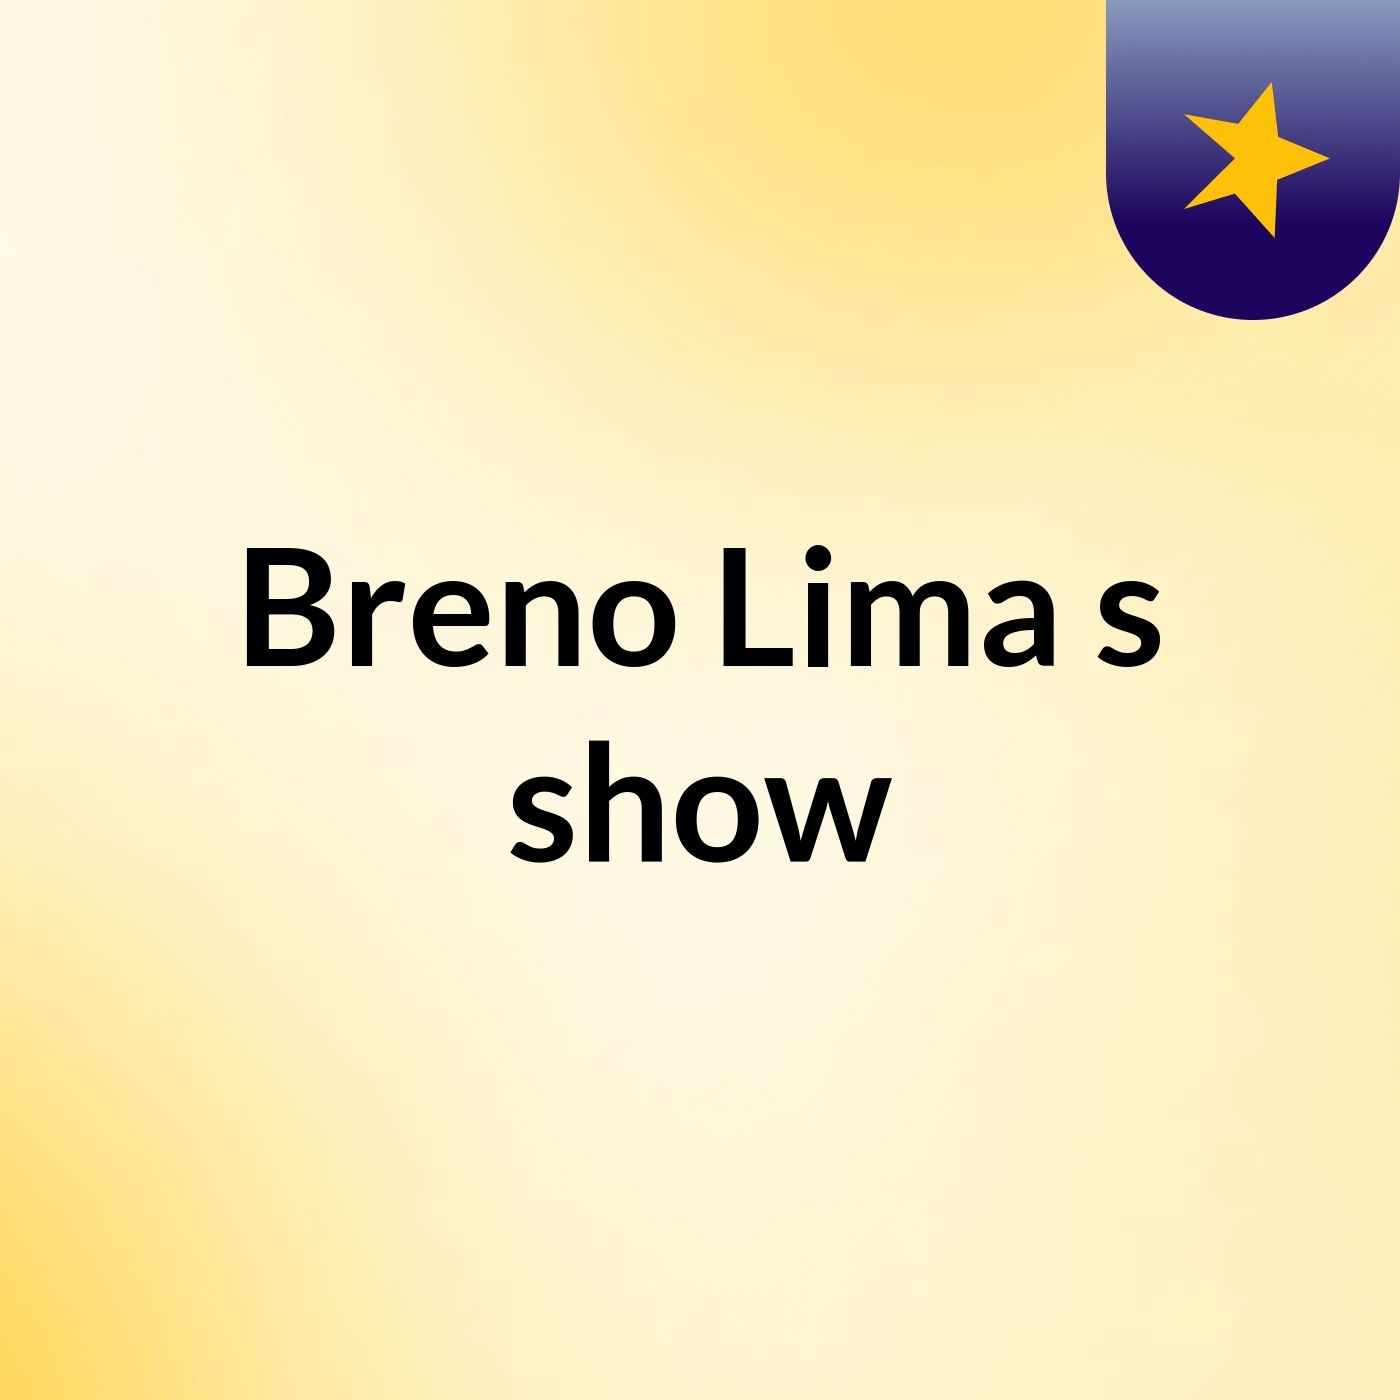 Breno Lima's show